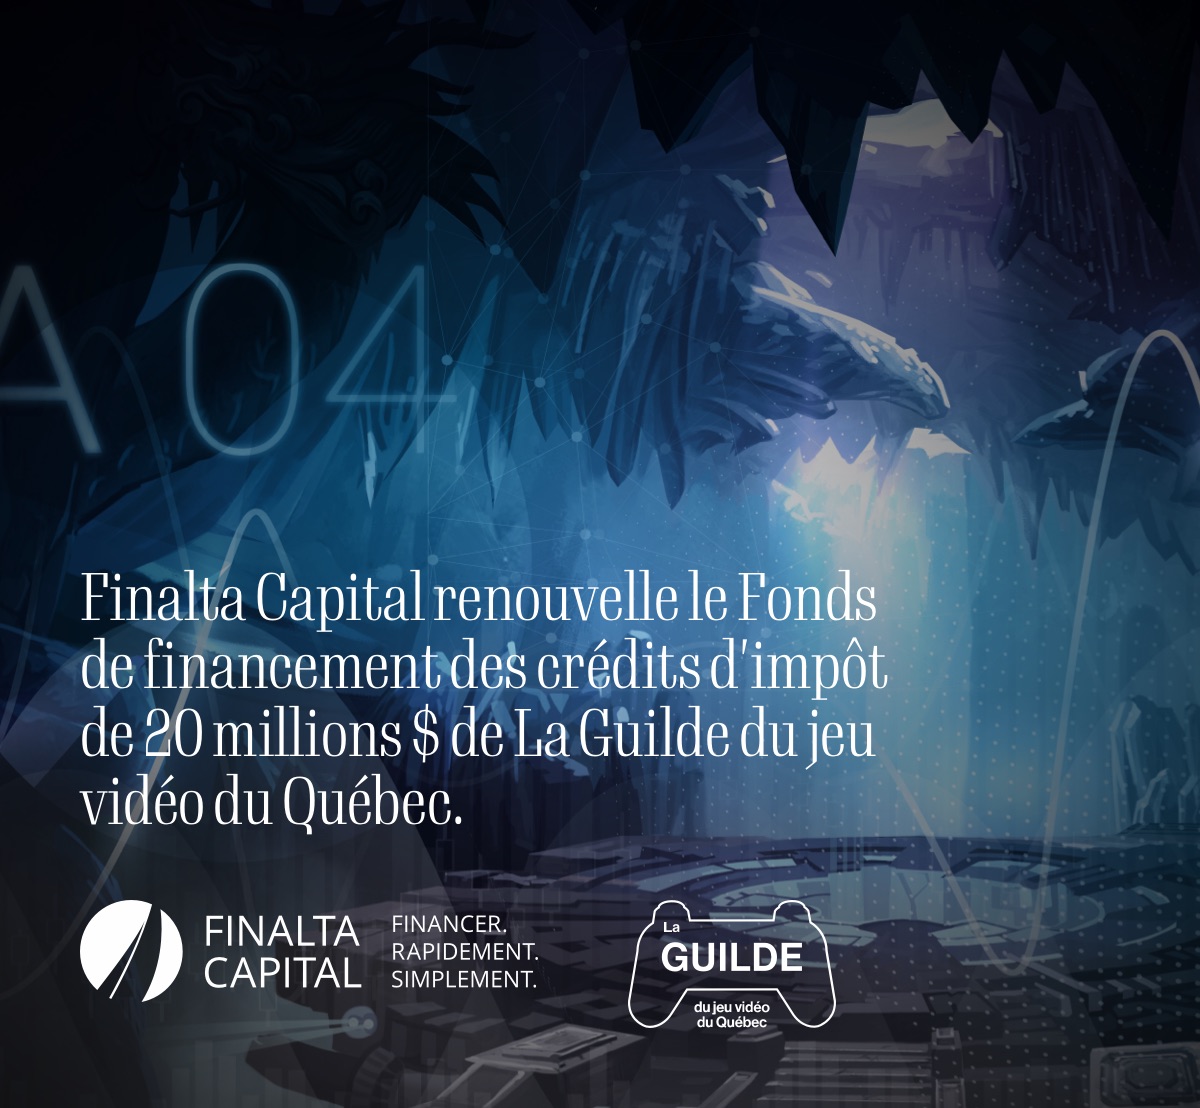 Finalta Capital renouvelle le Fonds de financement des crédits d'impôt de 20 millions $ de La Guilde du jeu vidéo du Québec.